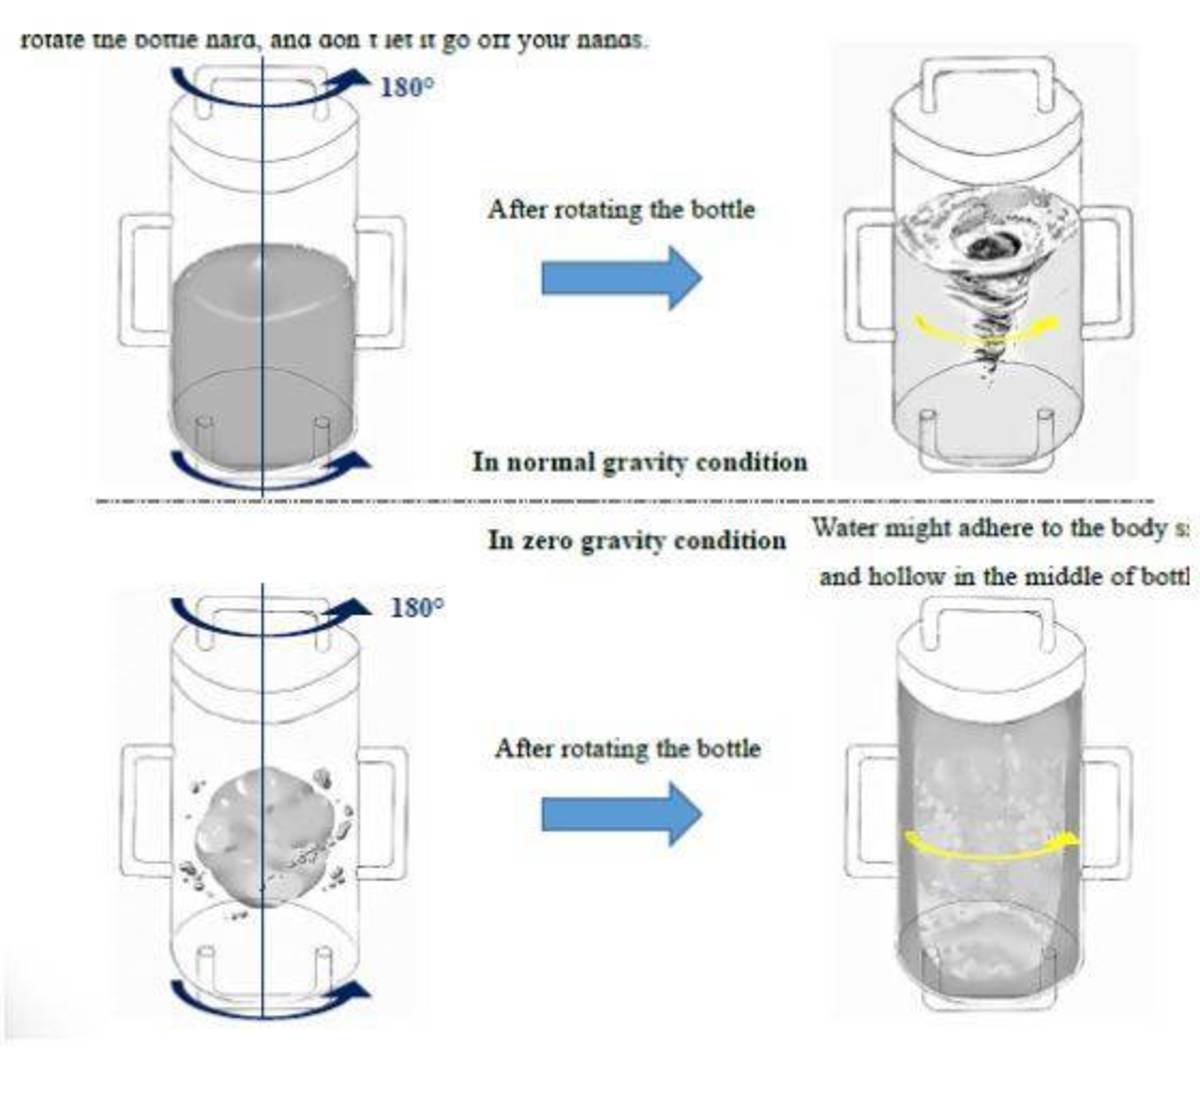 蔡志群的實驗計畫也包含觀察停止旋轉後的液體狀態。	